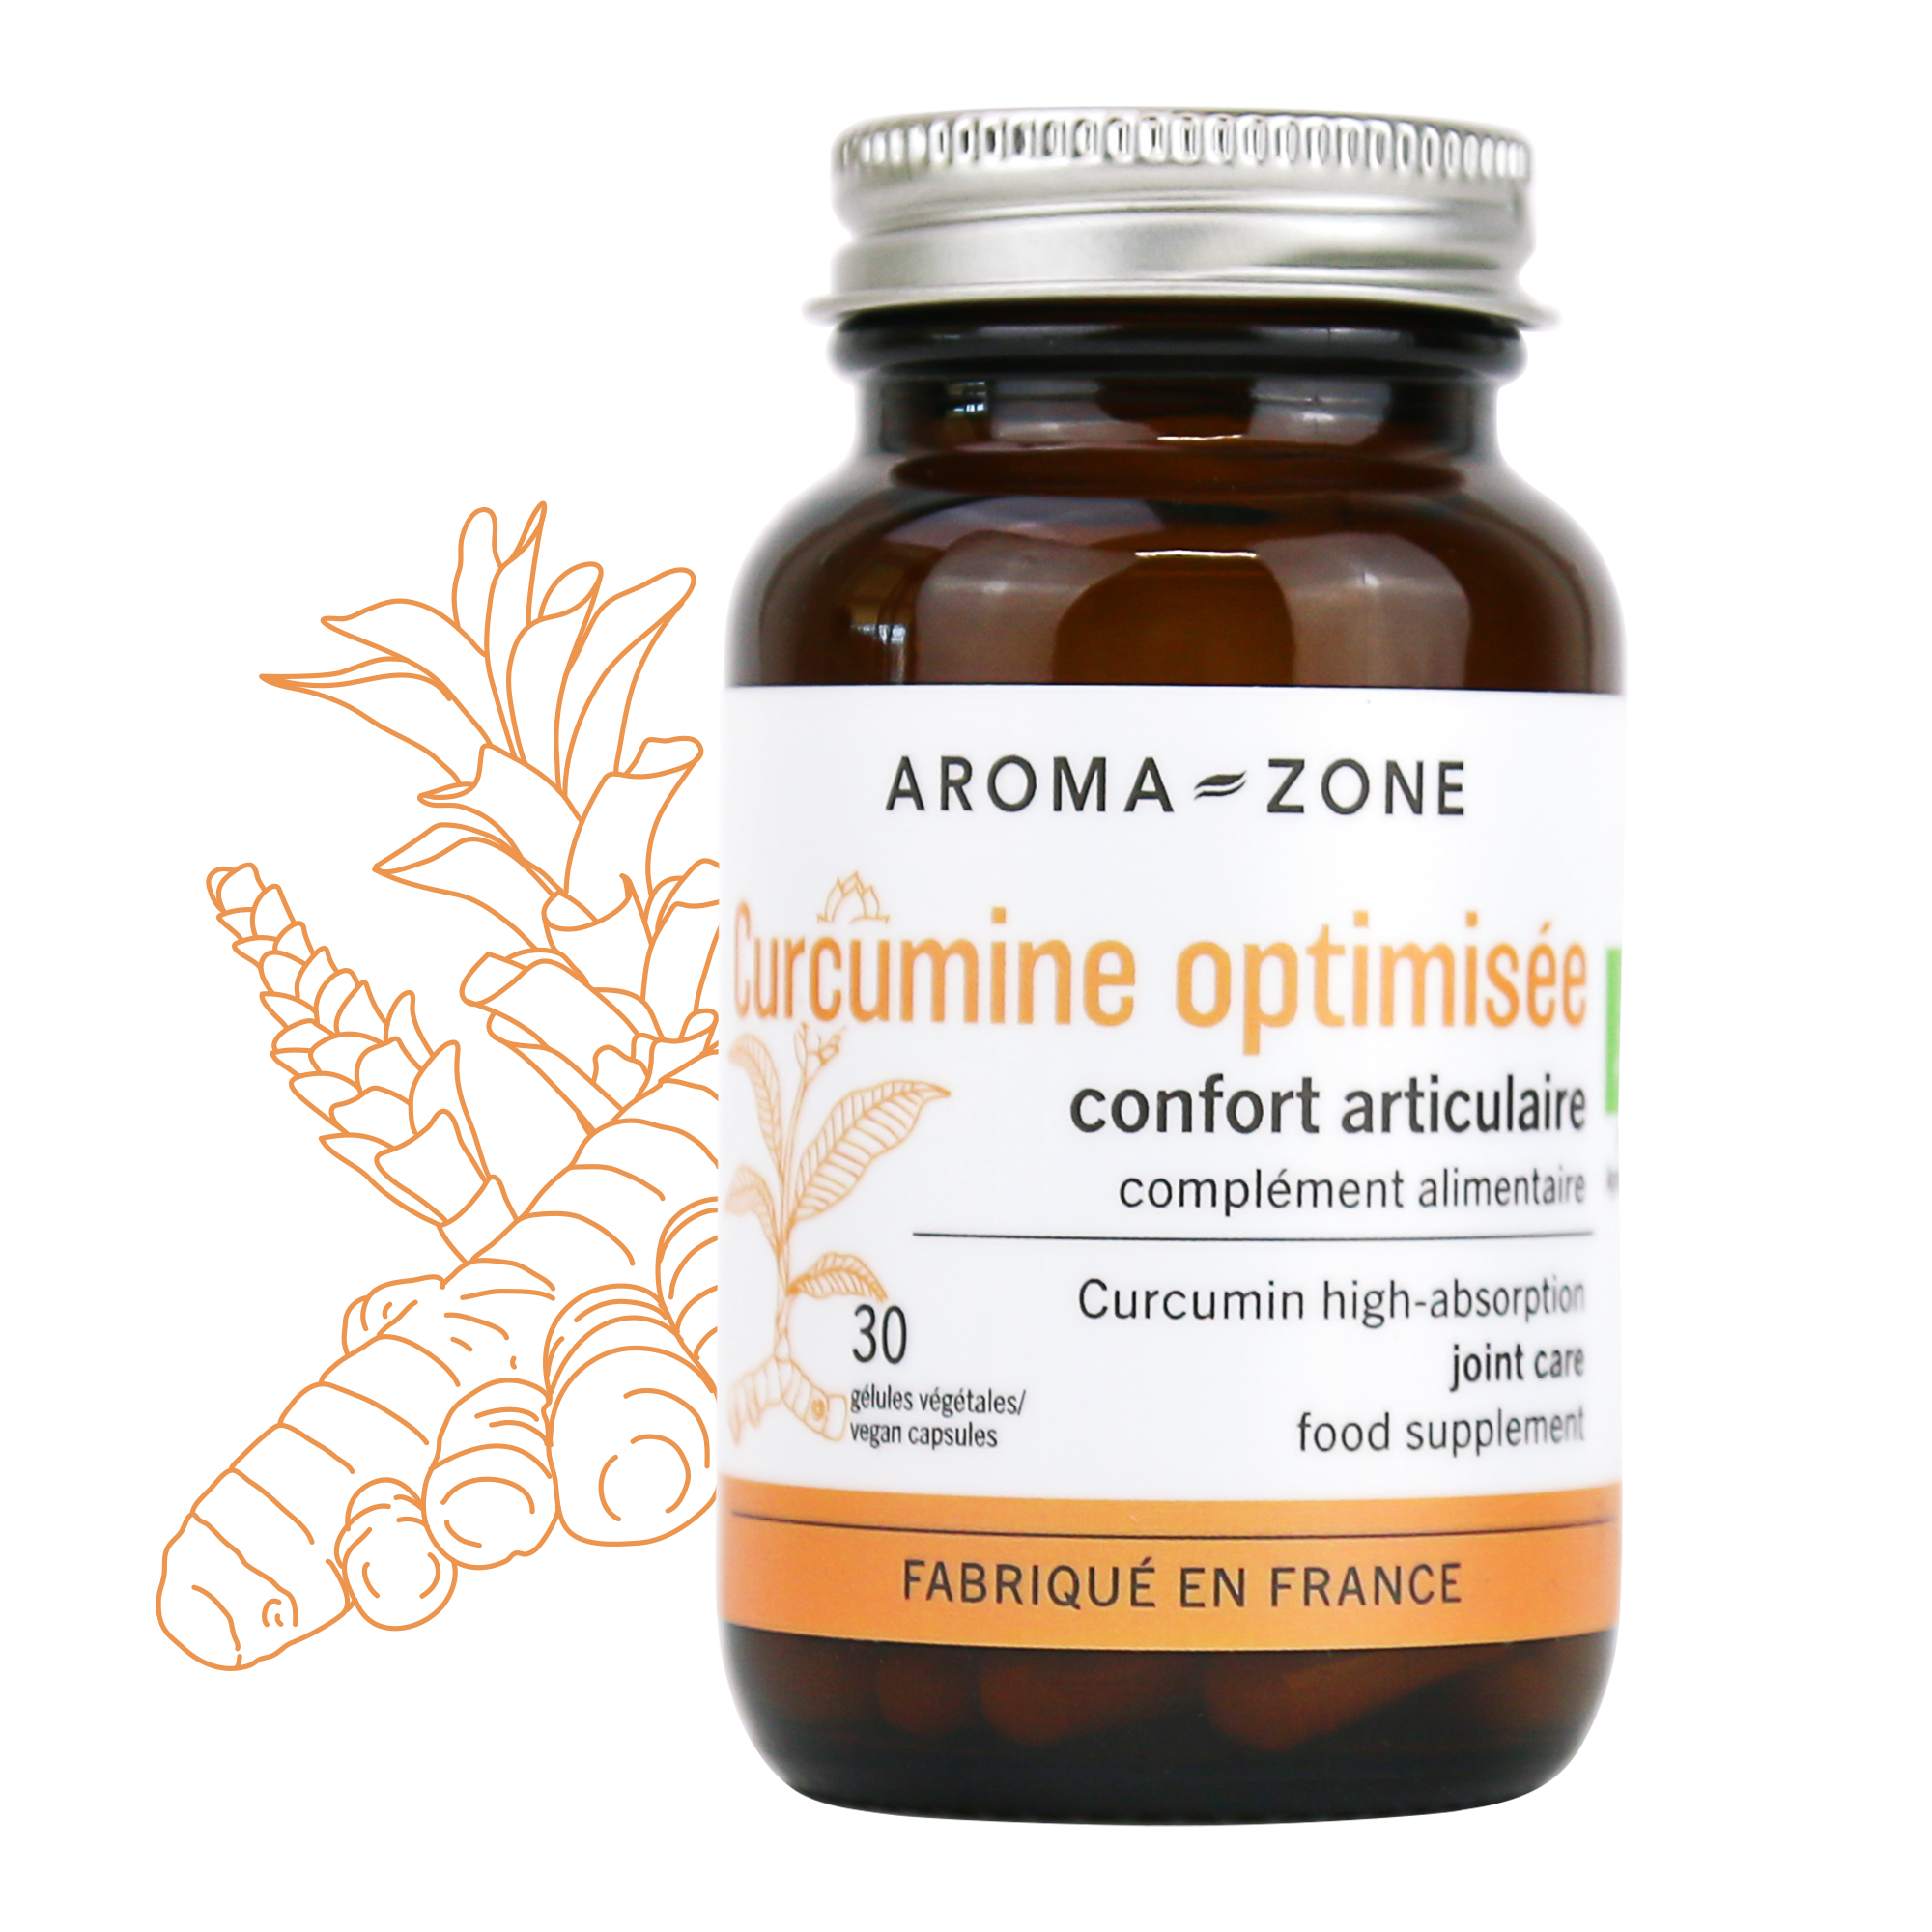 Curcumine optimisée : confort articulaire - Aroma-Zone